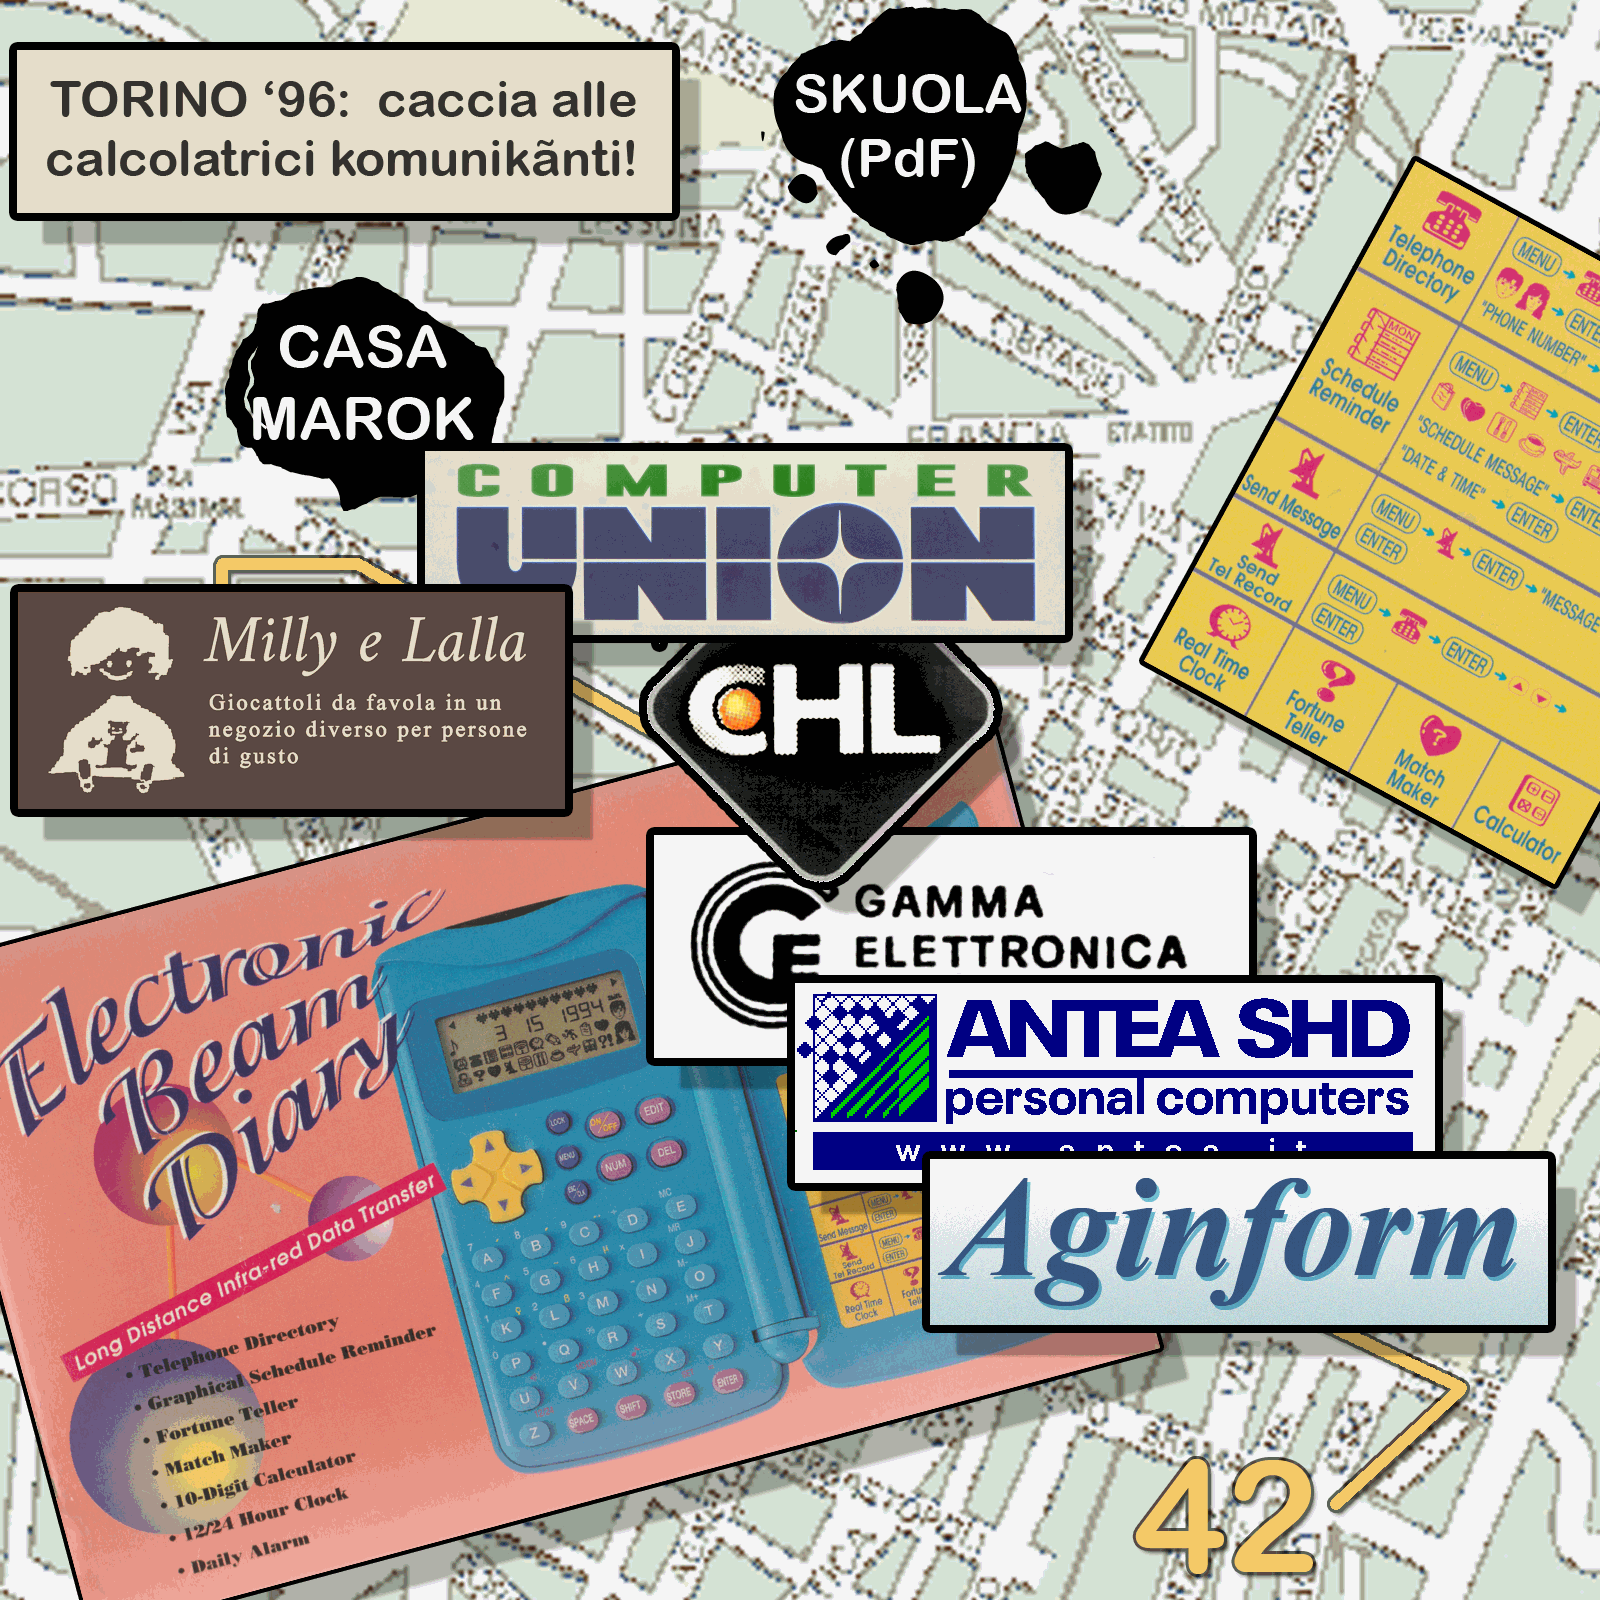 La mappa dei negozi nerd di Torino